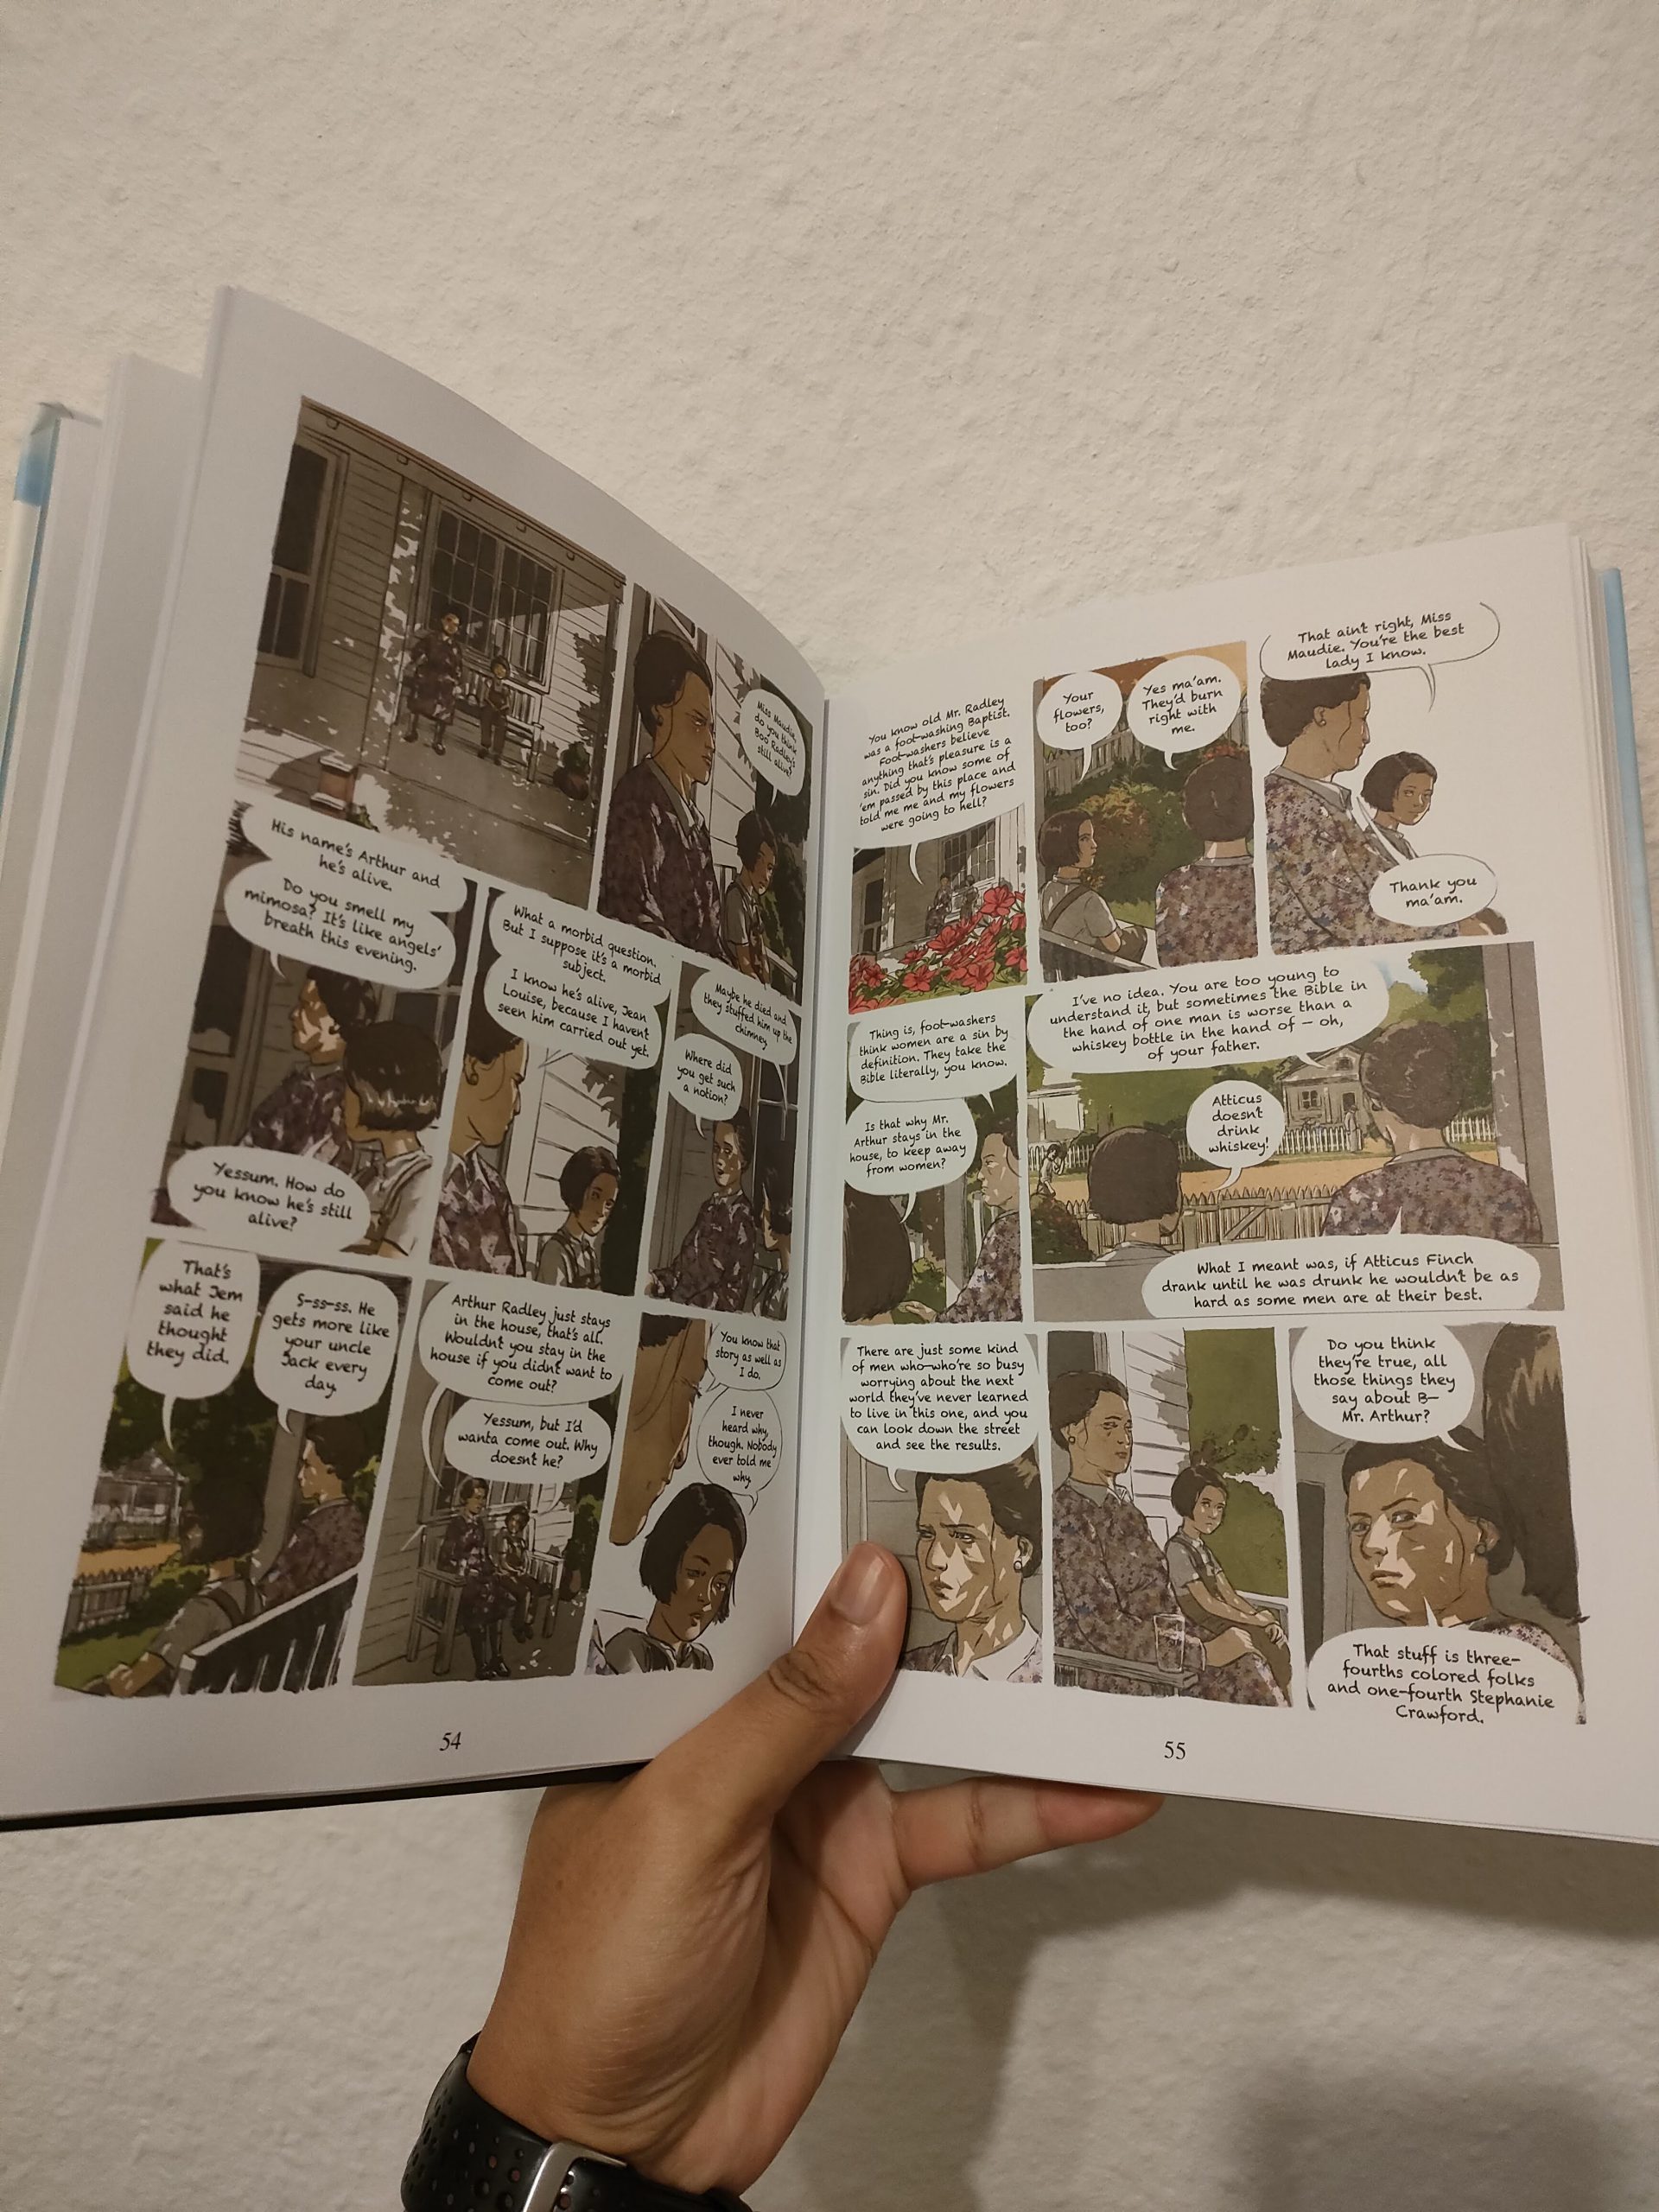 หนังสือ To kill a mockingbird ฉบับ Graphic novel